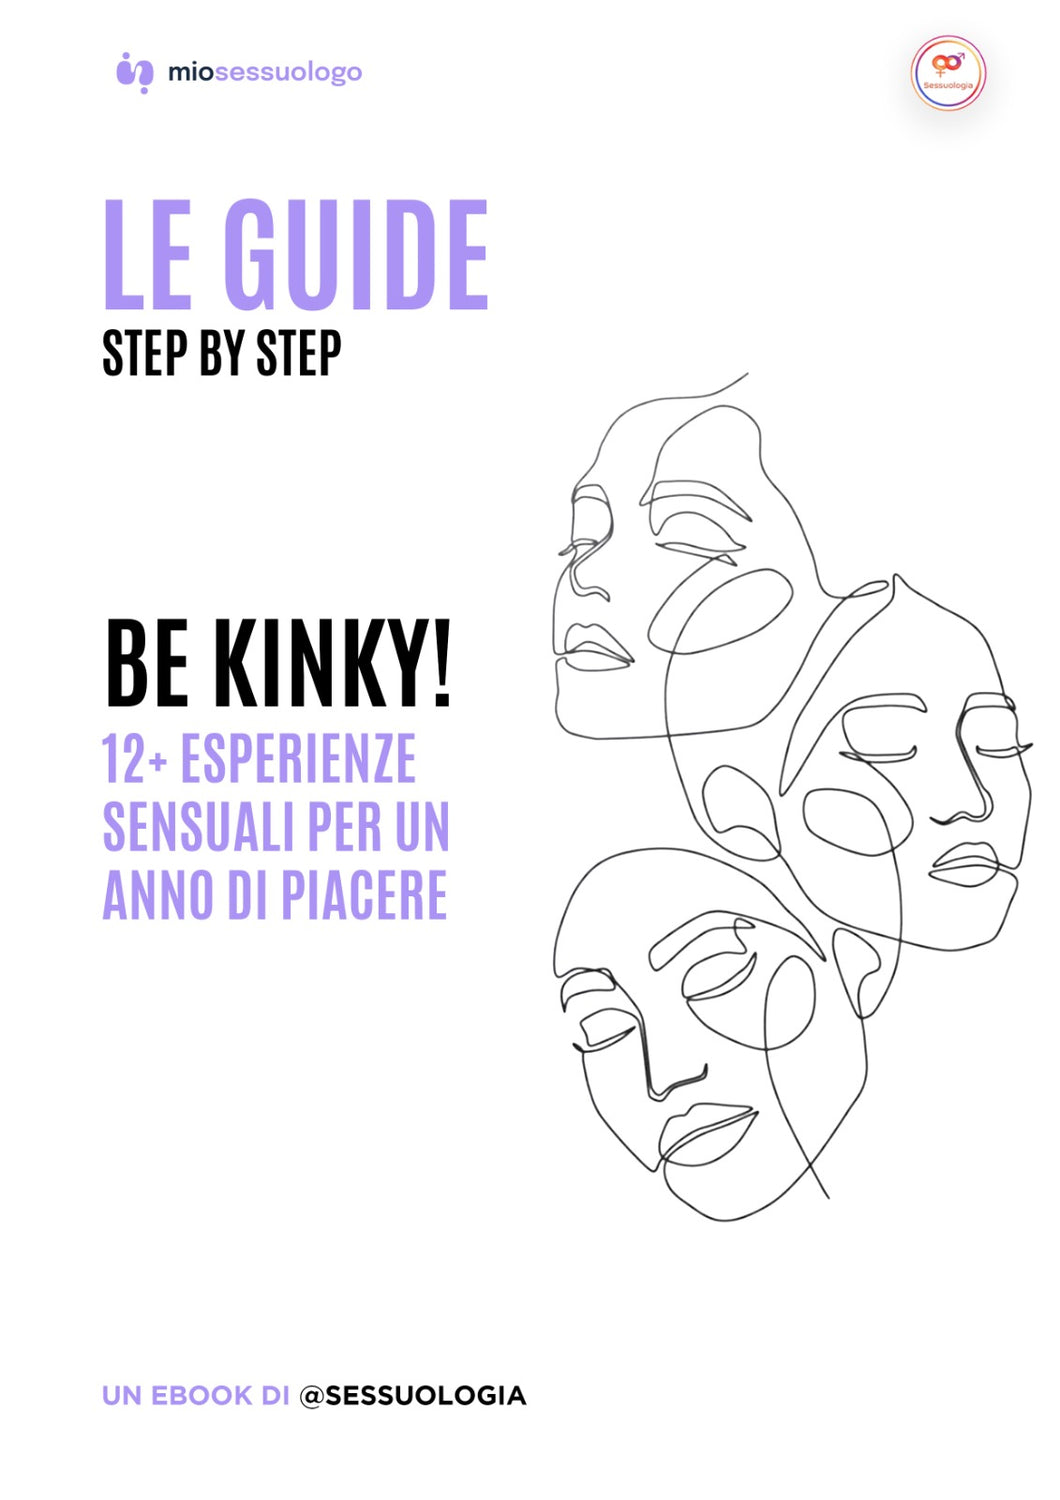 Be kinky! 12 e più esperienze sensuali per un anno di piacere